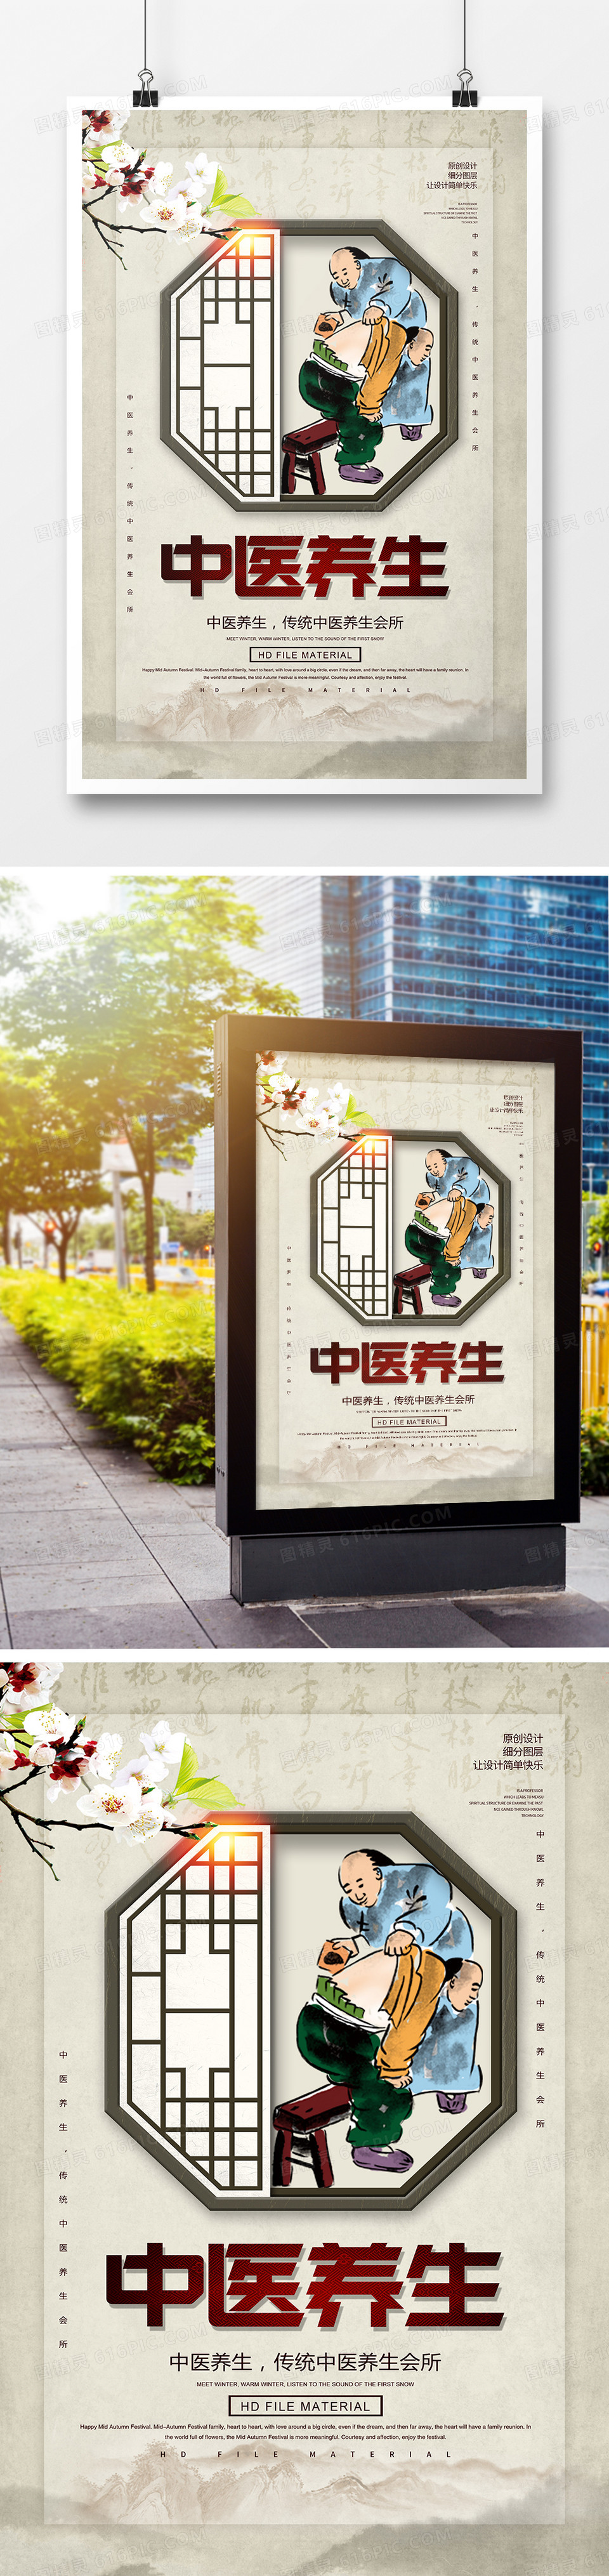 中国风中医养生宣传海报